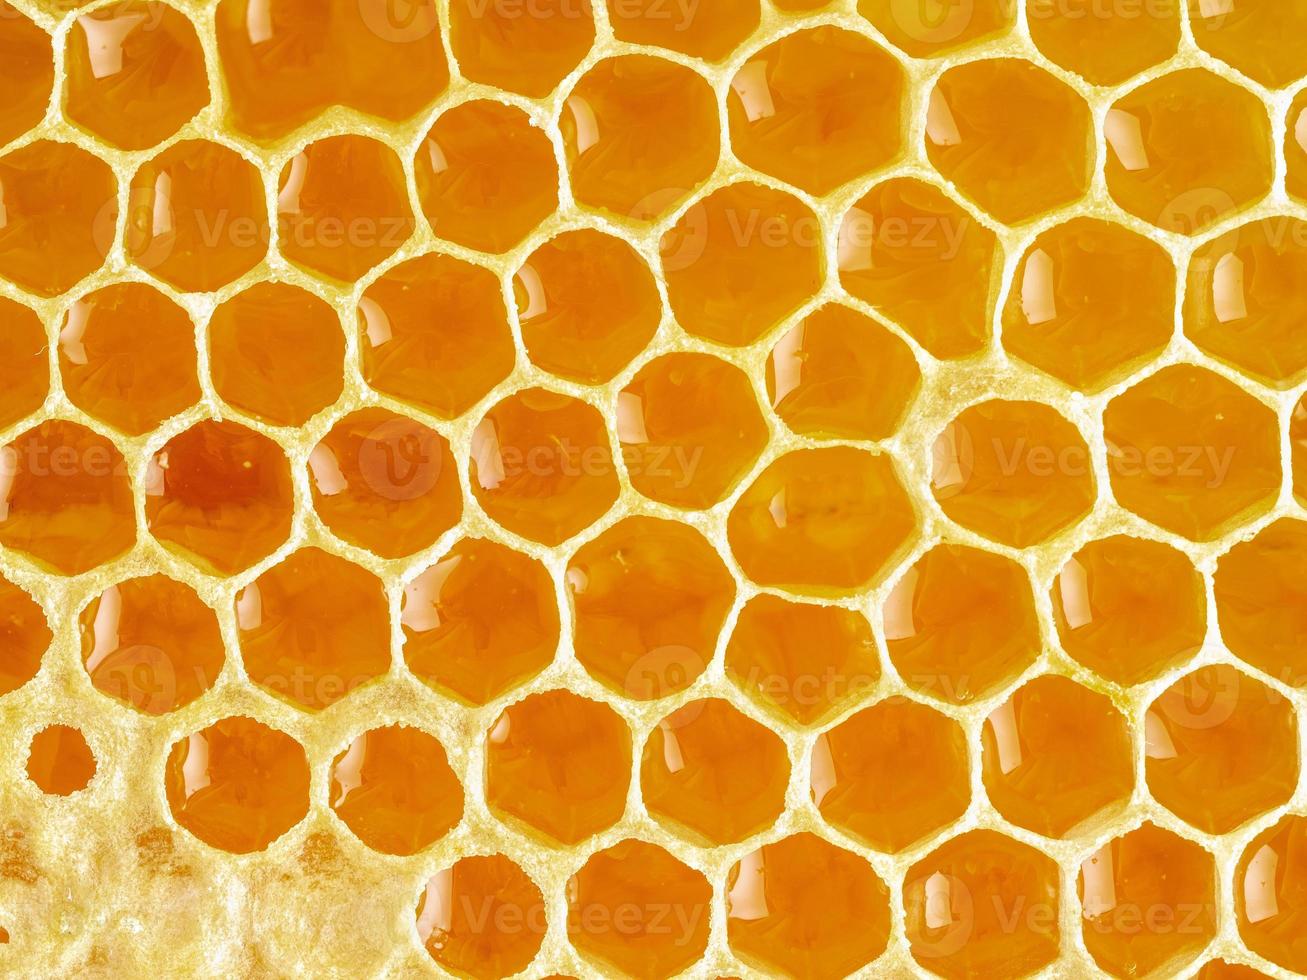 bijenhoningraatclose-up, verse vezelige druipende zoete honing, macroachtergrond foto